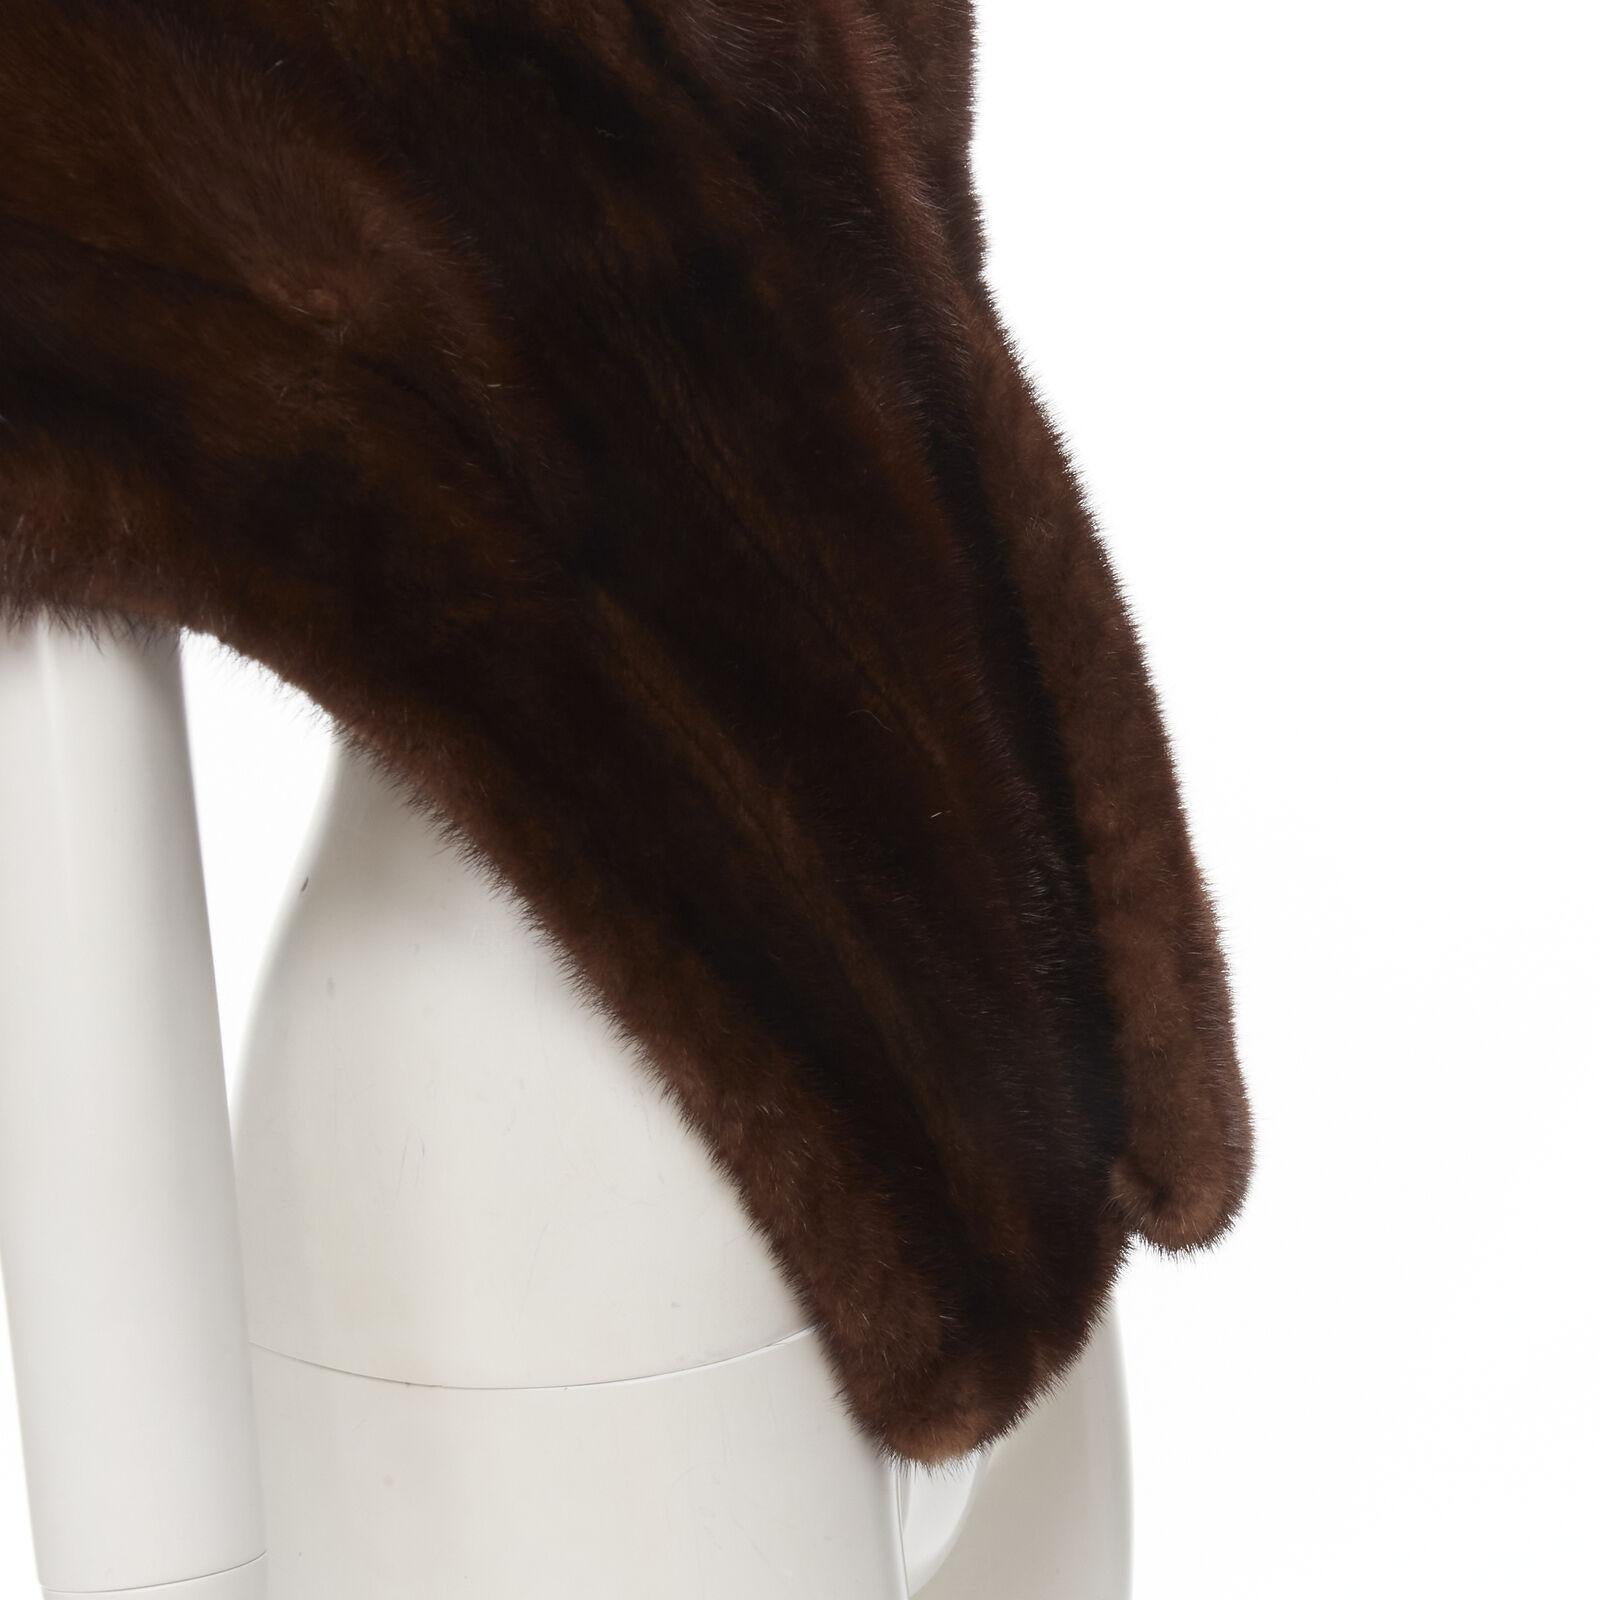 UNLABELLED brown mink fur shoulder shawl scarf hook eye closure For Sale 3